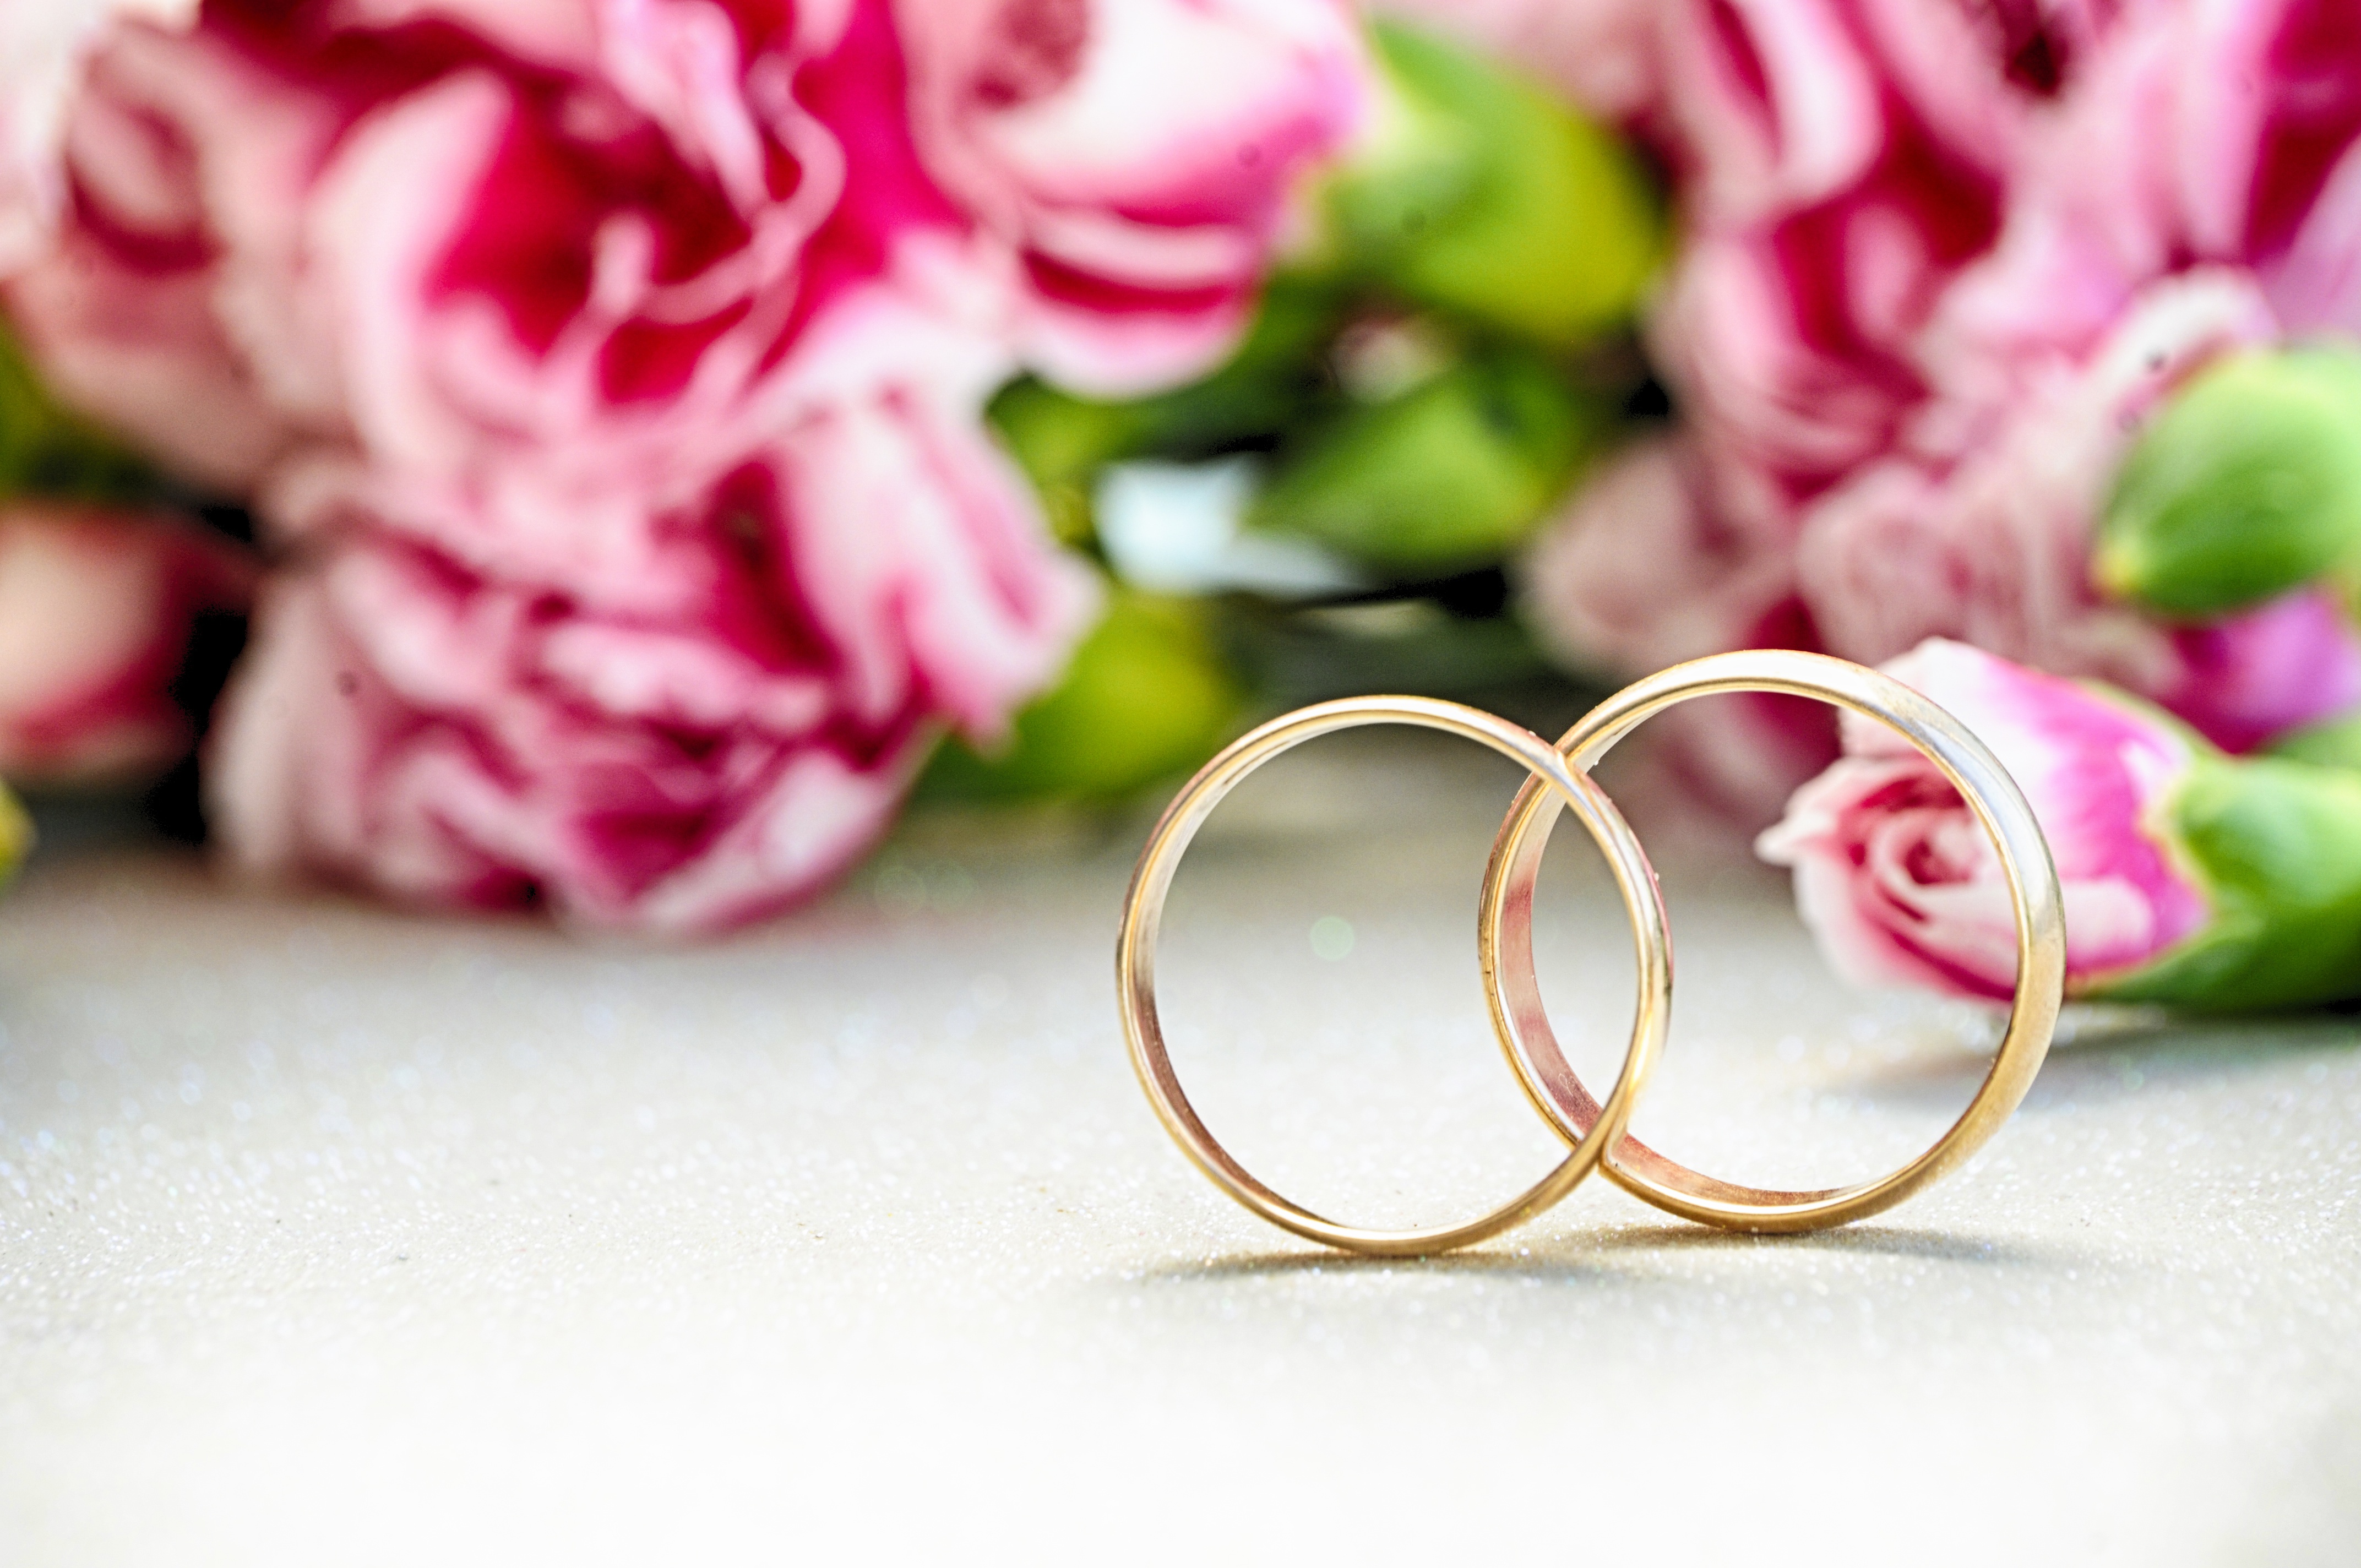 Фото кольца и цветов. ЗАГС Усть-Цильма. Красивые Свадебные кольца. Кольца на свадьбу. Свадебные кольца в цветах.